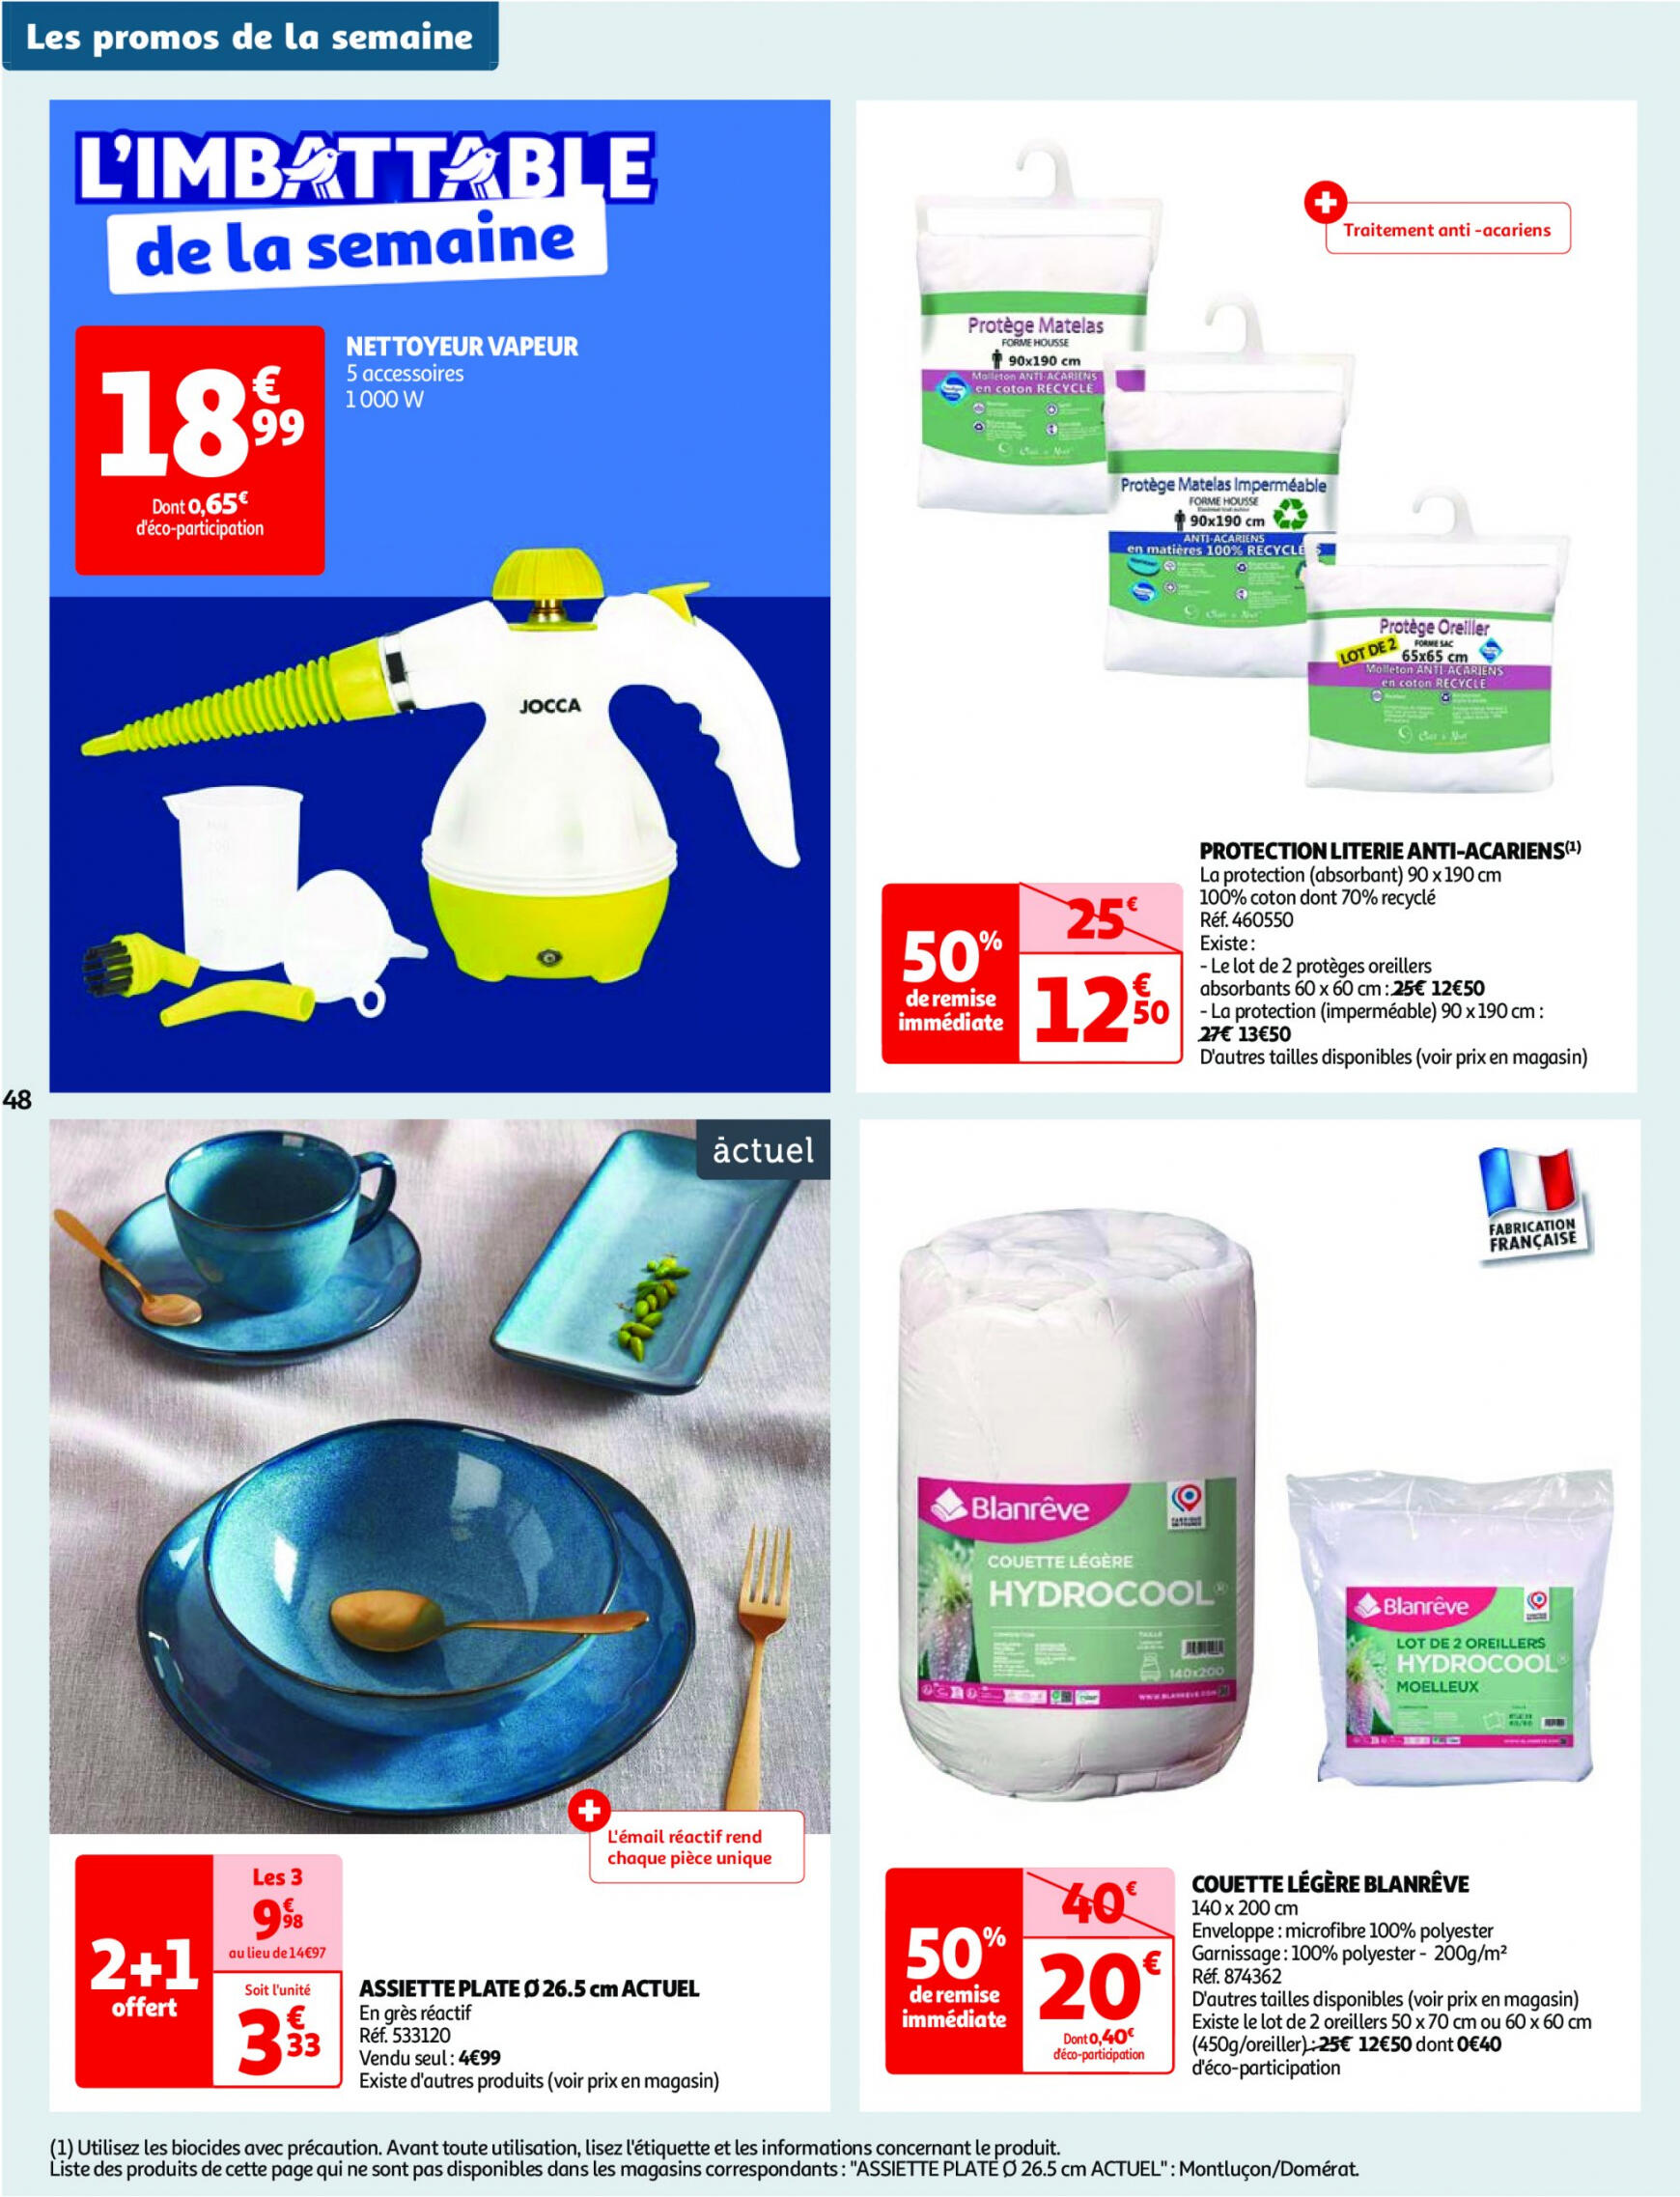 auchan - Prospectus Auchan actuel 14.05. - 21.05. - page: 48